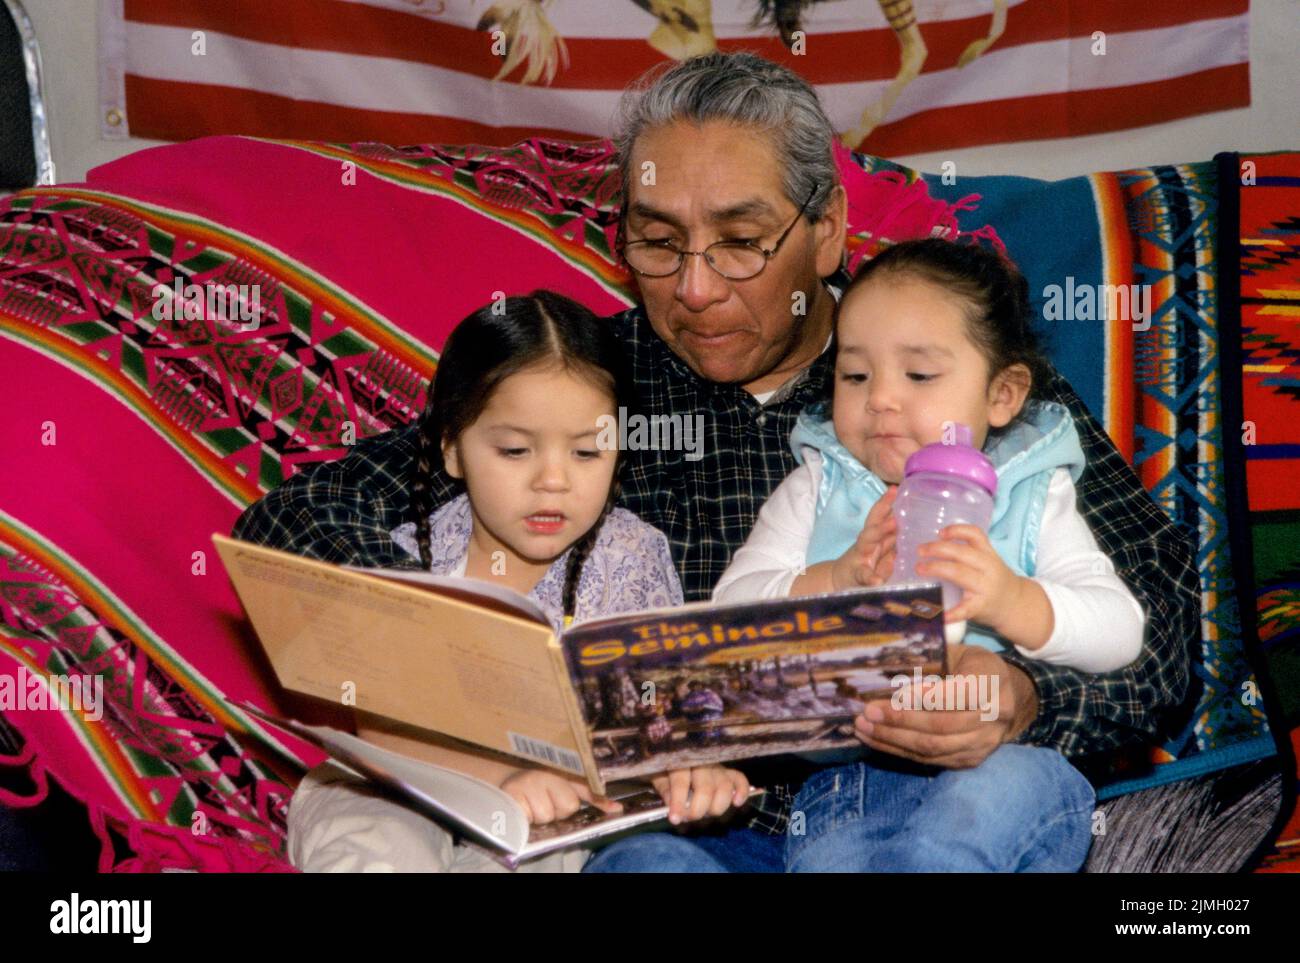 Book to Grandchildren, Fort Hall Idaho Stock Photo